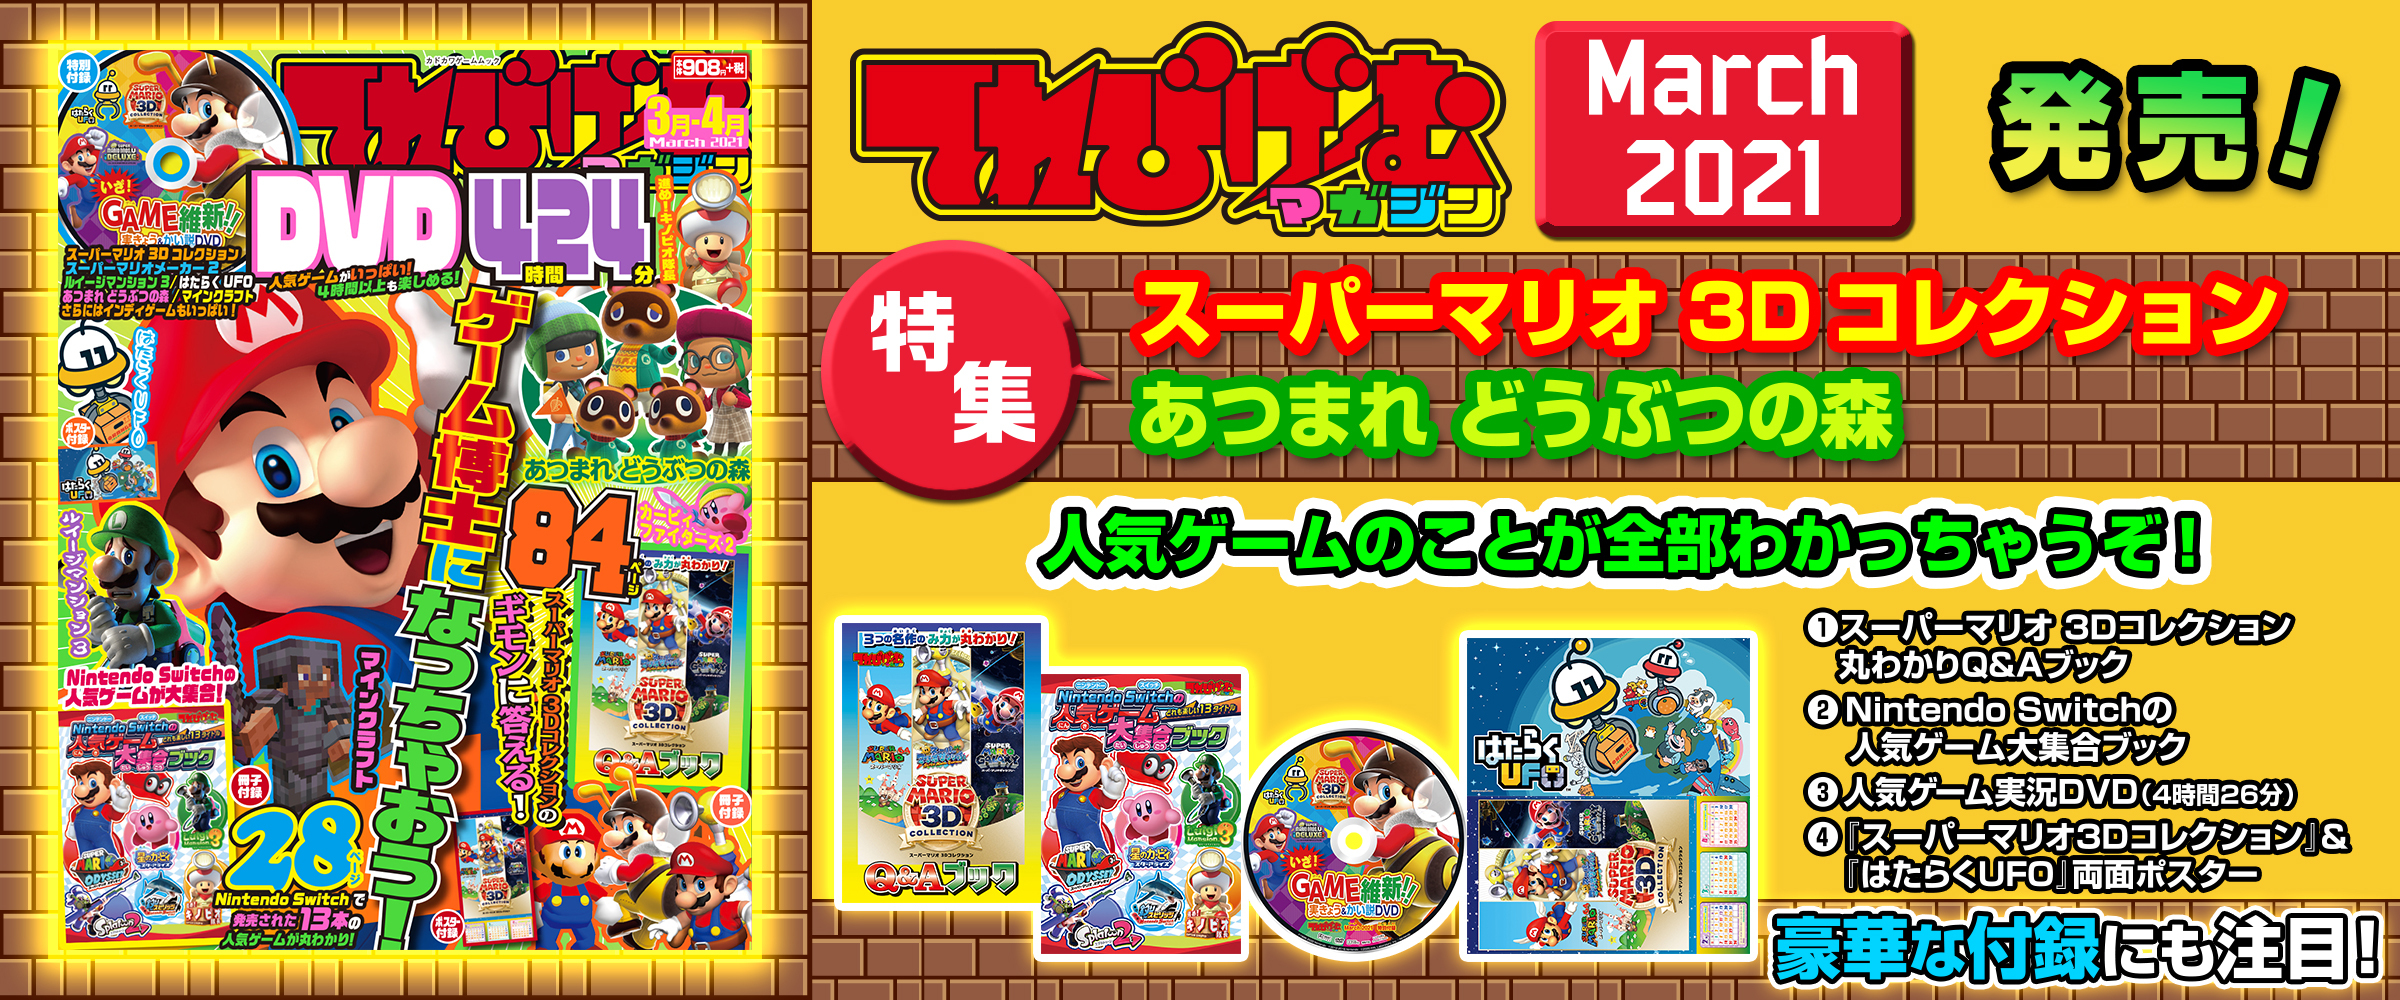 【送料無料】Switch マリオ3Dコレクション マリオパーティ オデッセイ